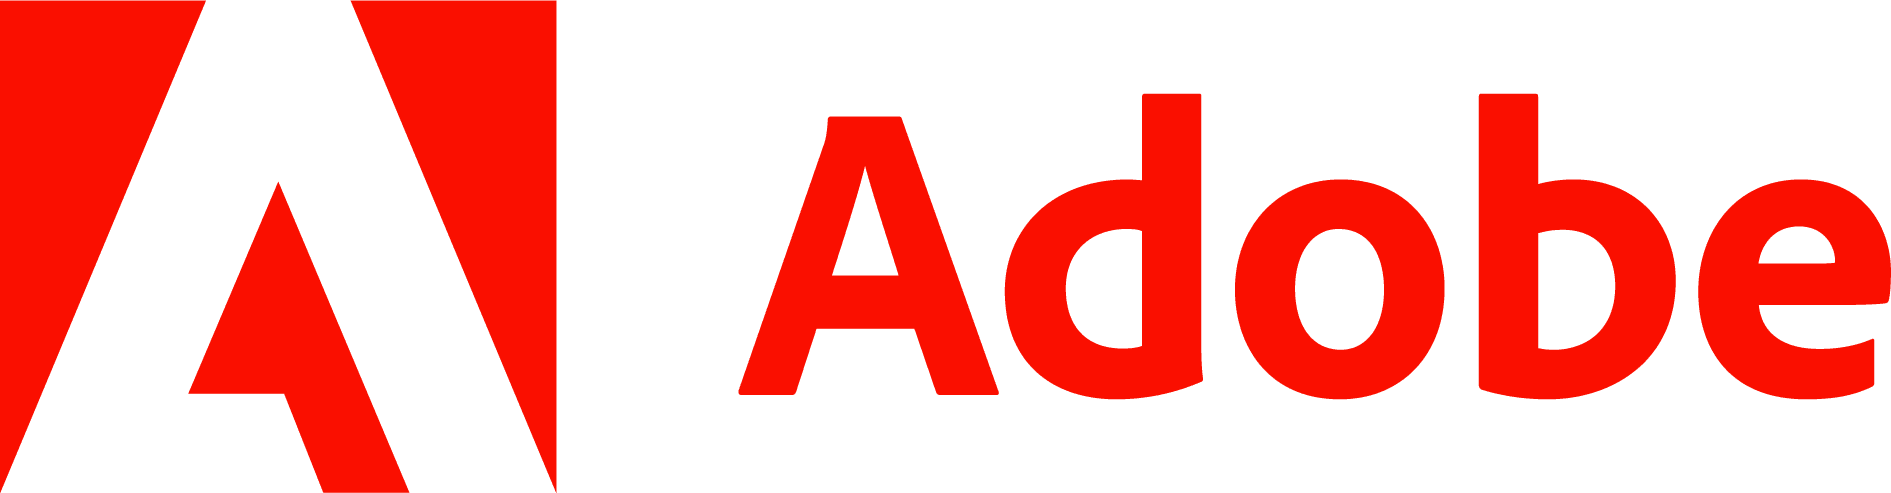 Adobe-Logo-PNG2.png